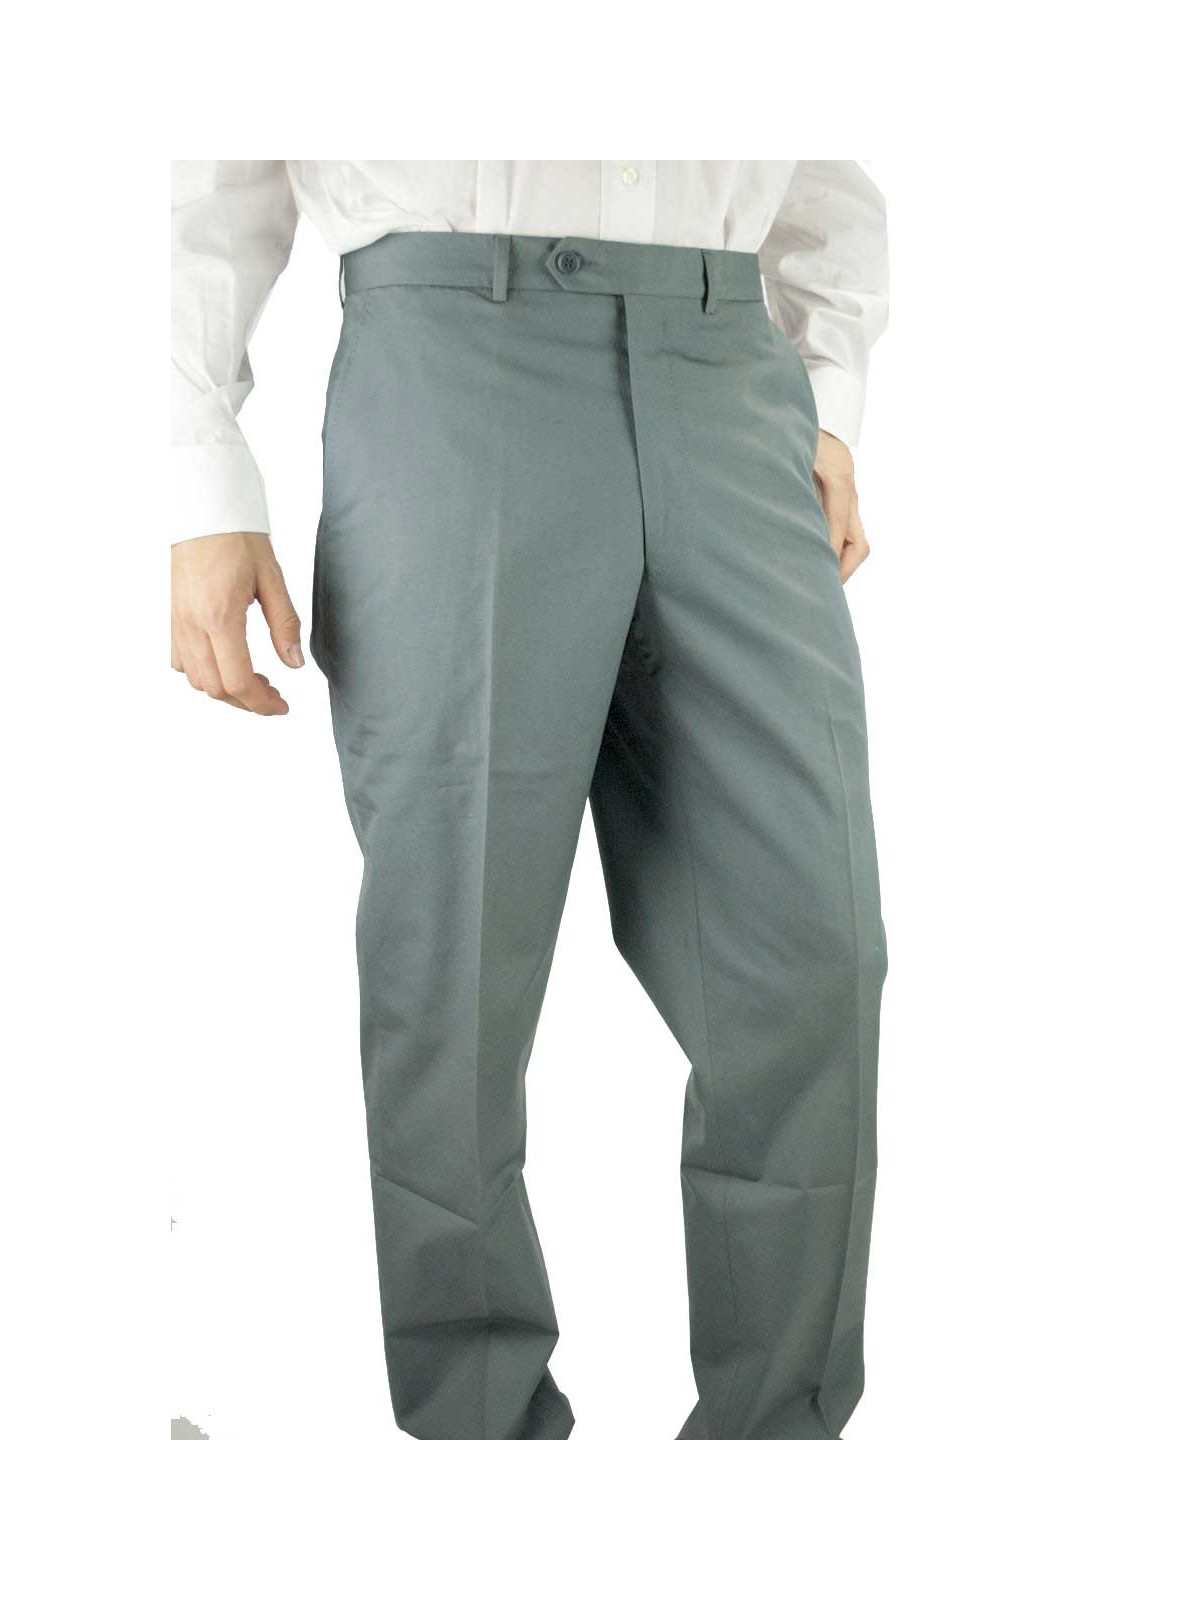 Pantaloni Uomo Classico taglia 50 Verde salvia  - Tasche Laterali - PE